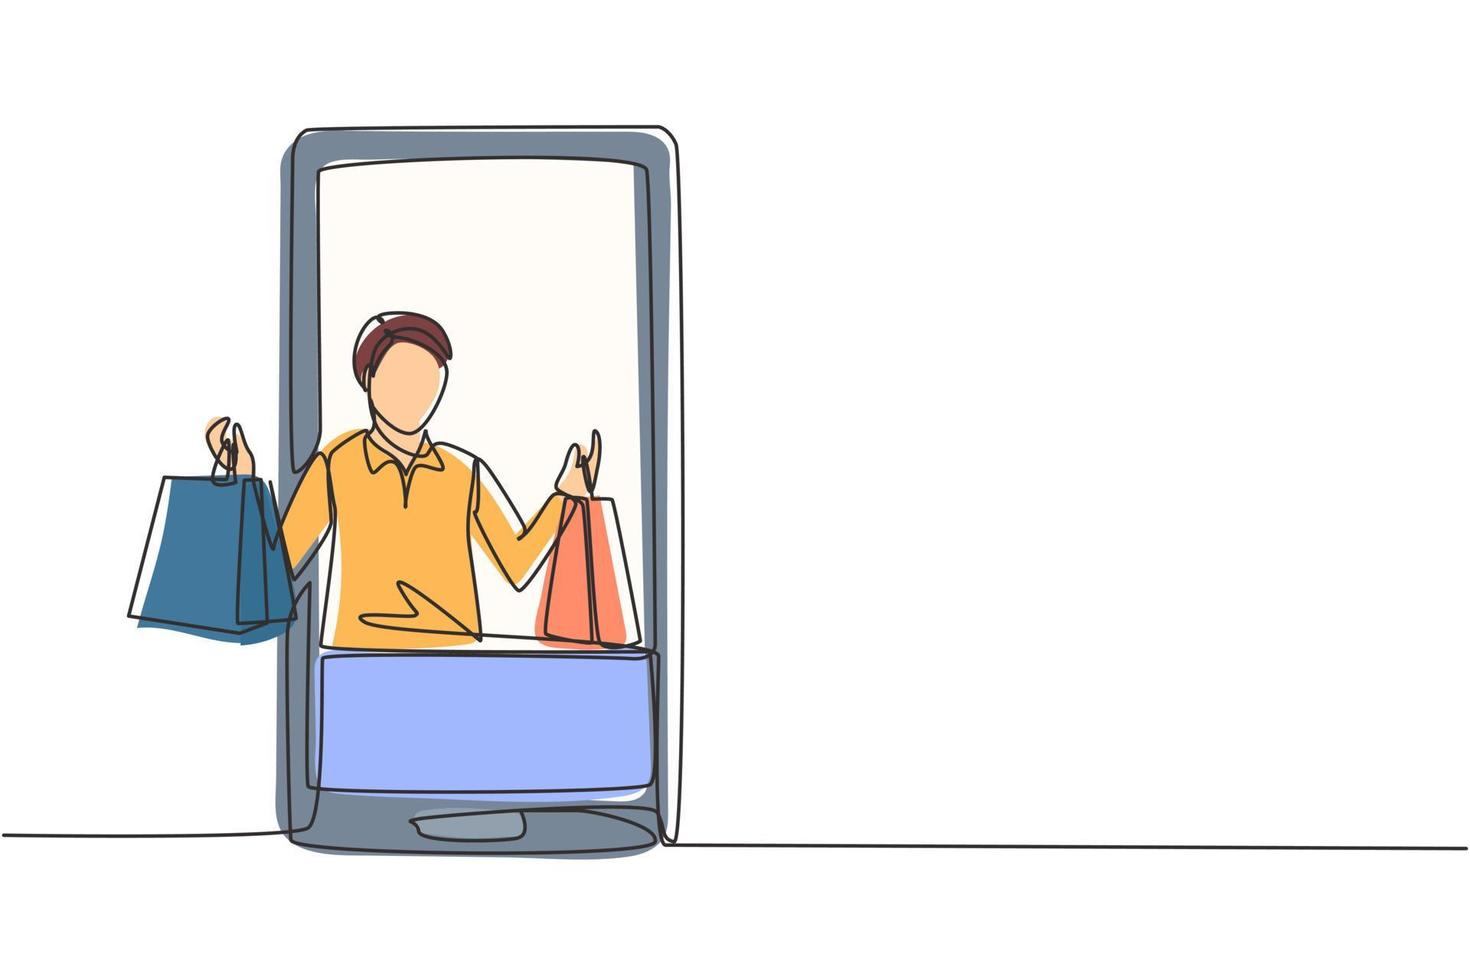 einzelne durchgehende Strichzeichnung junger Mann, der aus dem Smartphone-Bildschirm kommt und Einkaufstüten hält. Konzept des digitalen Lebensstils und des Konsums. dynamische eine linie zeichnen grafikdesign vektorillustration vektor